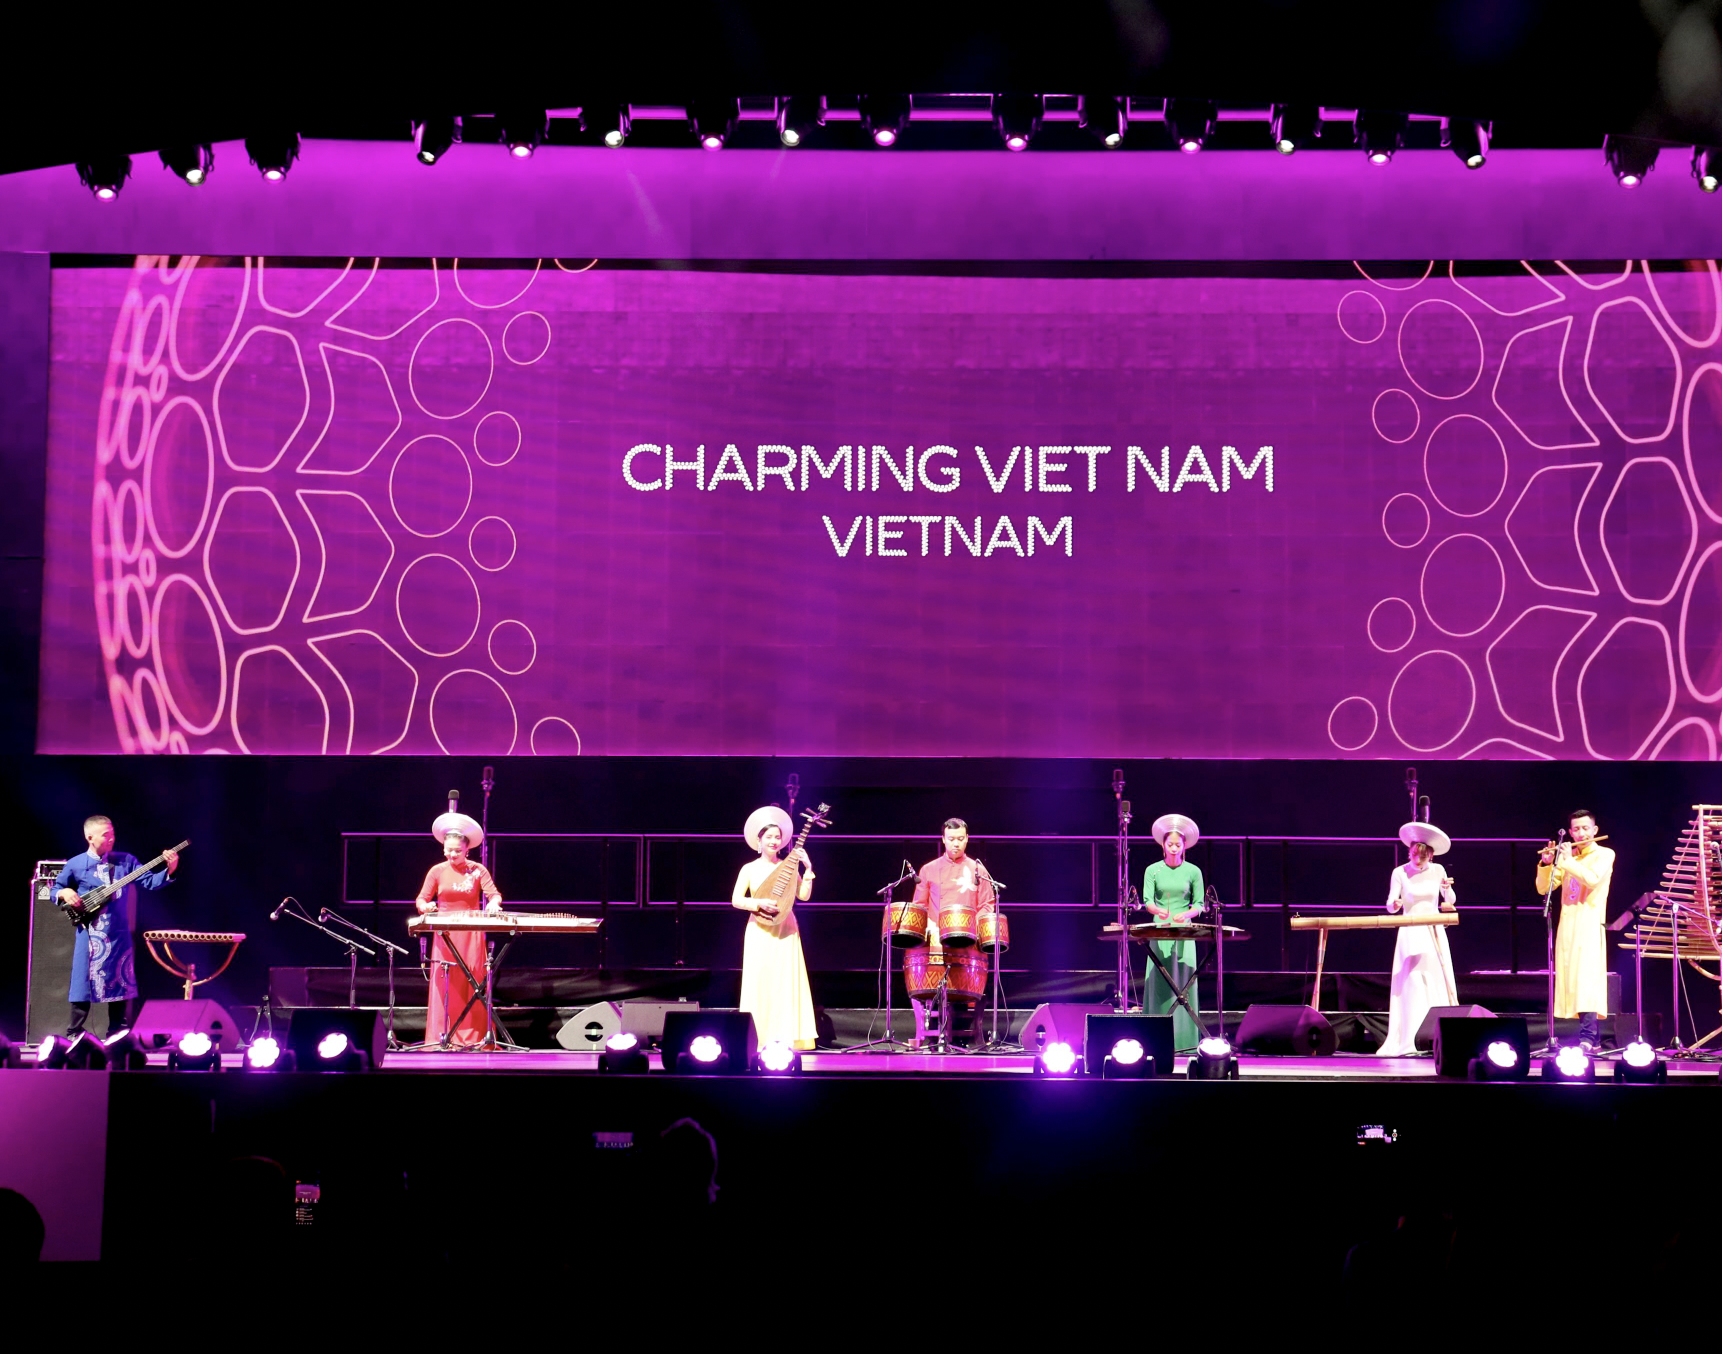 Quảng bá tinh hoa văn hóa, truyền thống Việt Nam qua chương trình nghệ thuật Charming Việt Nam tại Expo 2020 Dubai